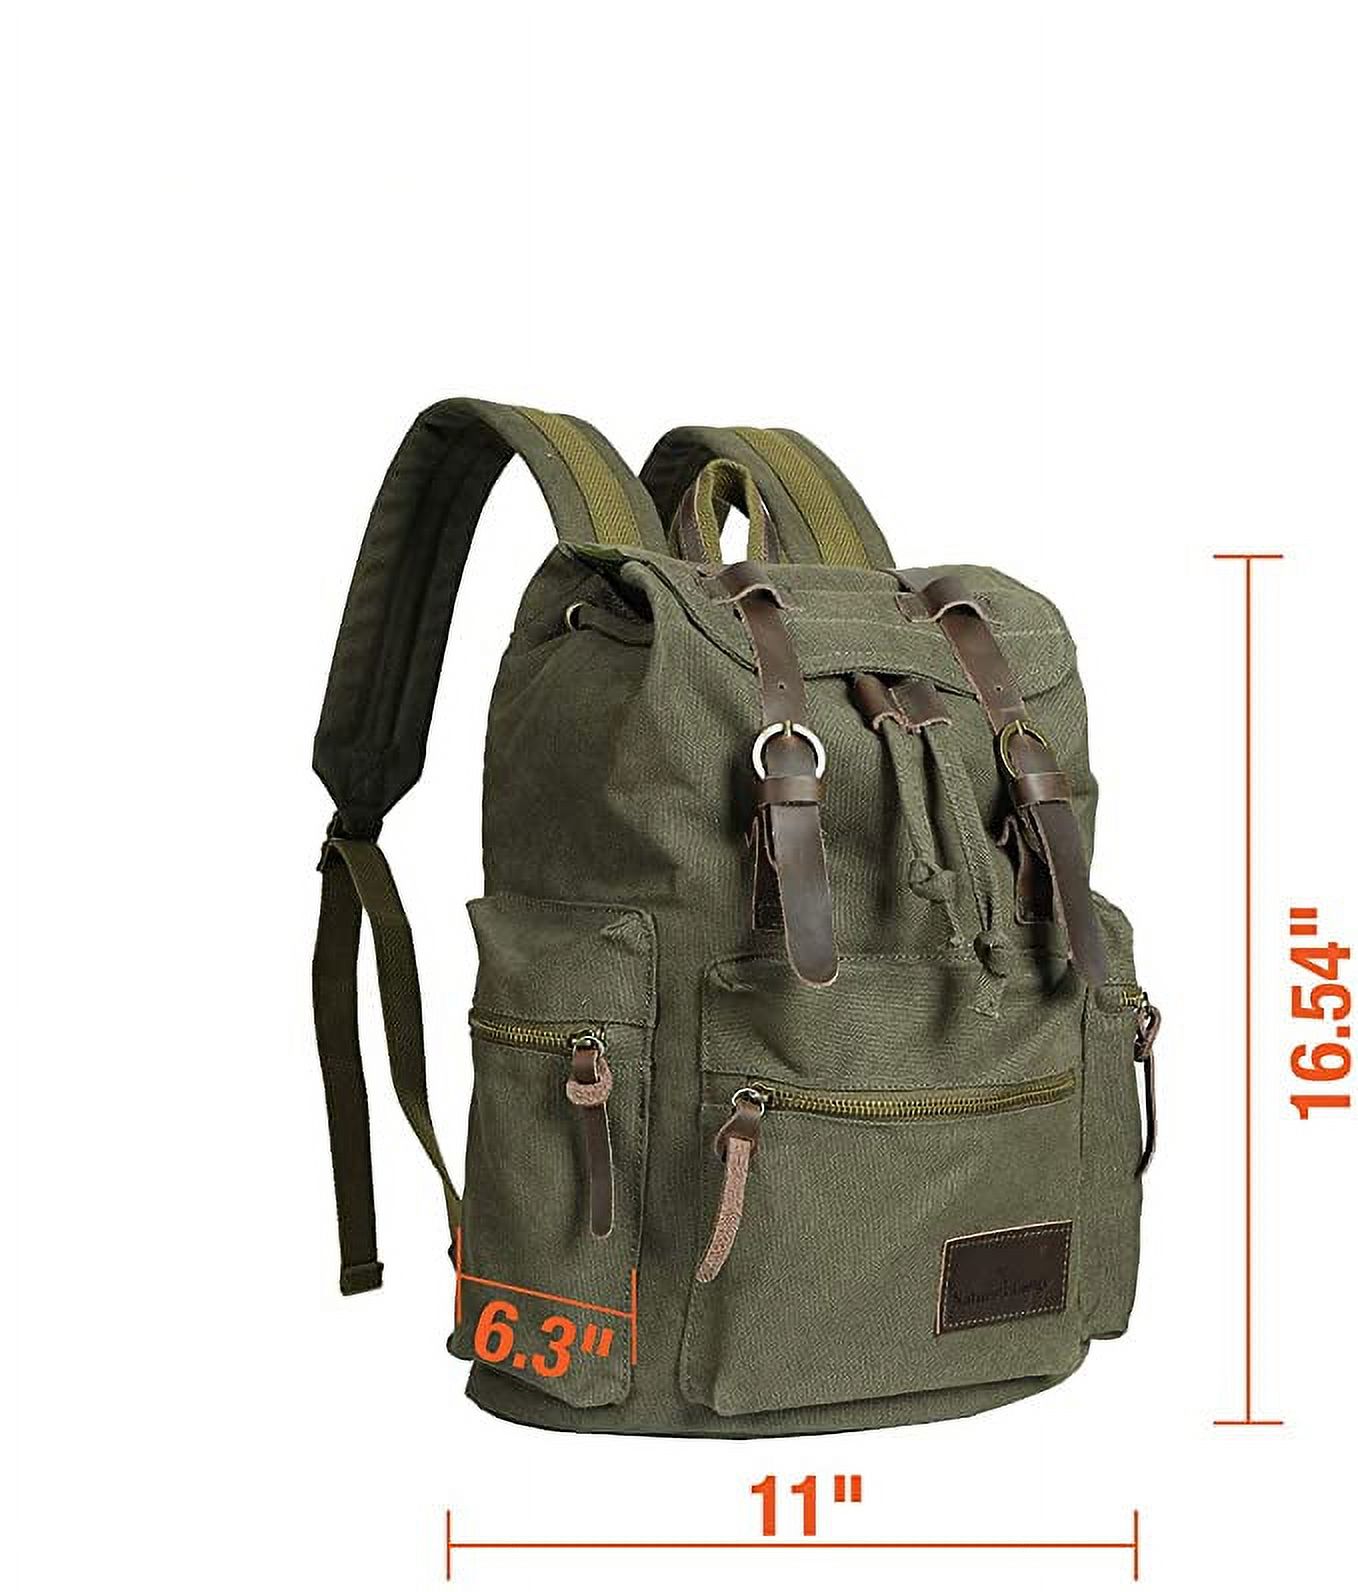 MF Studio Canvas Backpack Vintage Casual Bag Shoulder Sling Daypack Drawstring Travel Rucksack - image 2 of 7